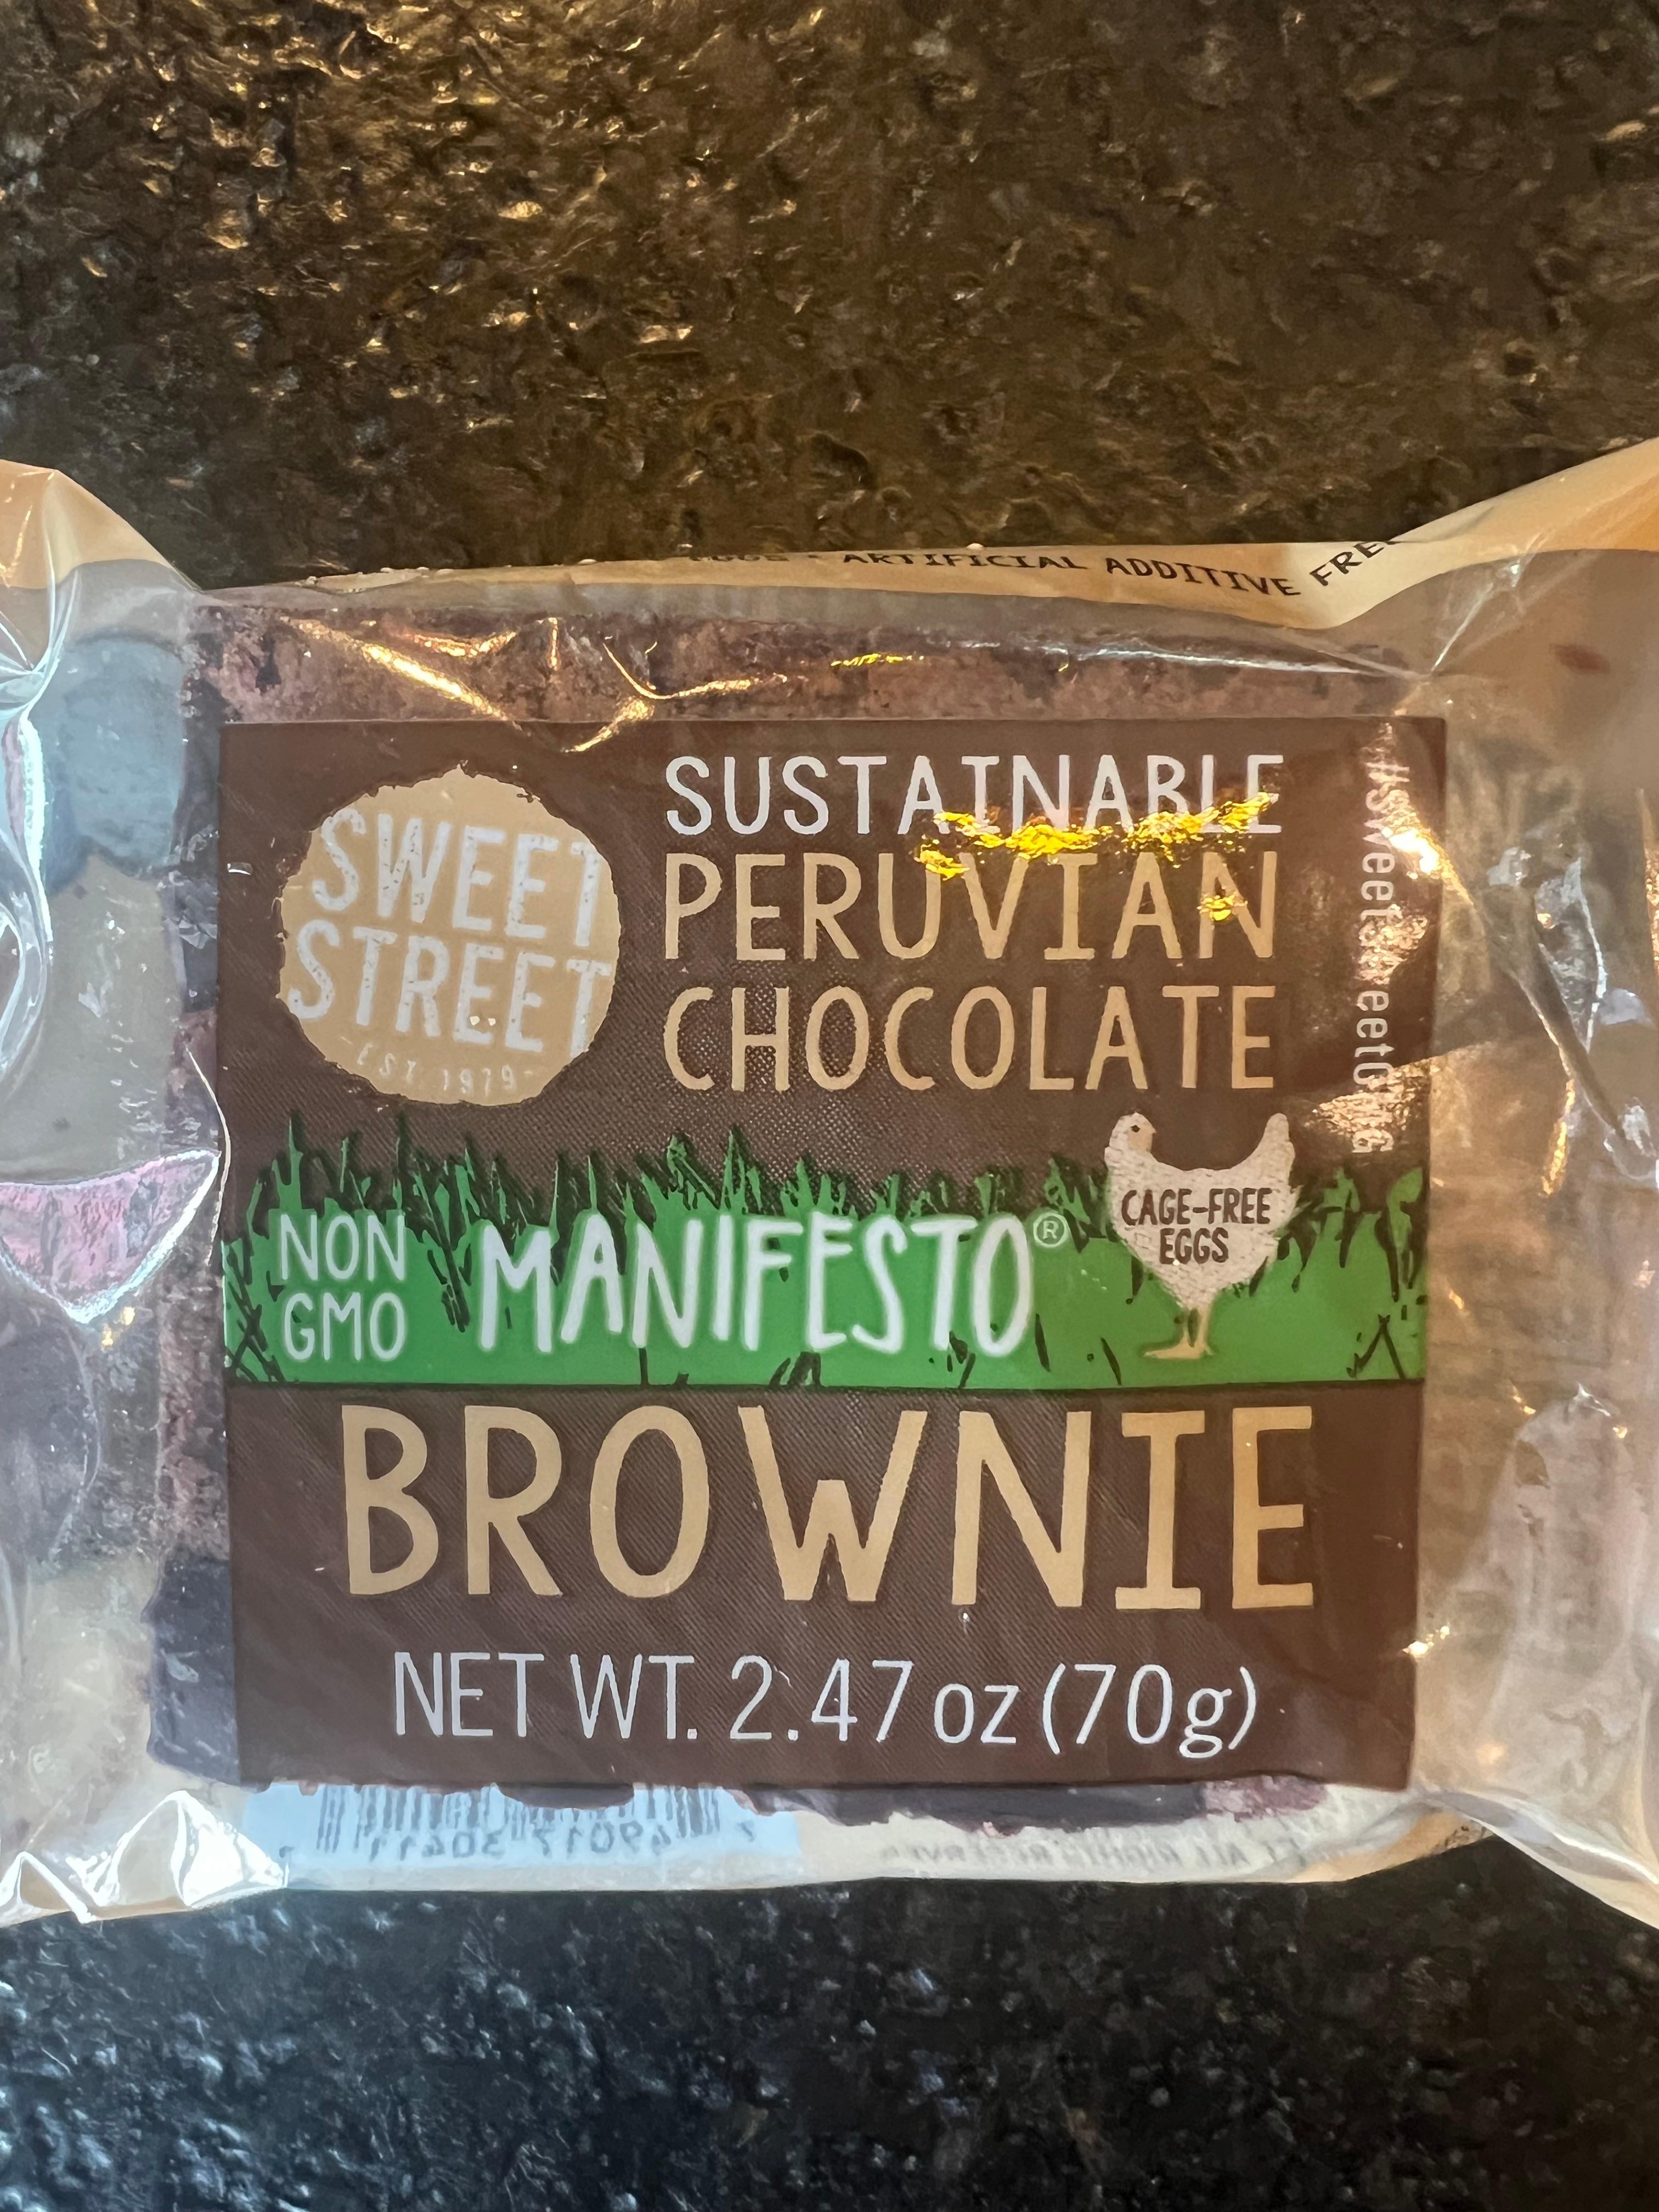 Brownie: Sustainable Peruvian Chocolate